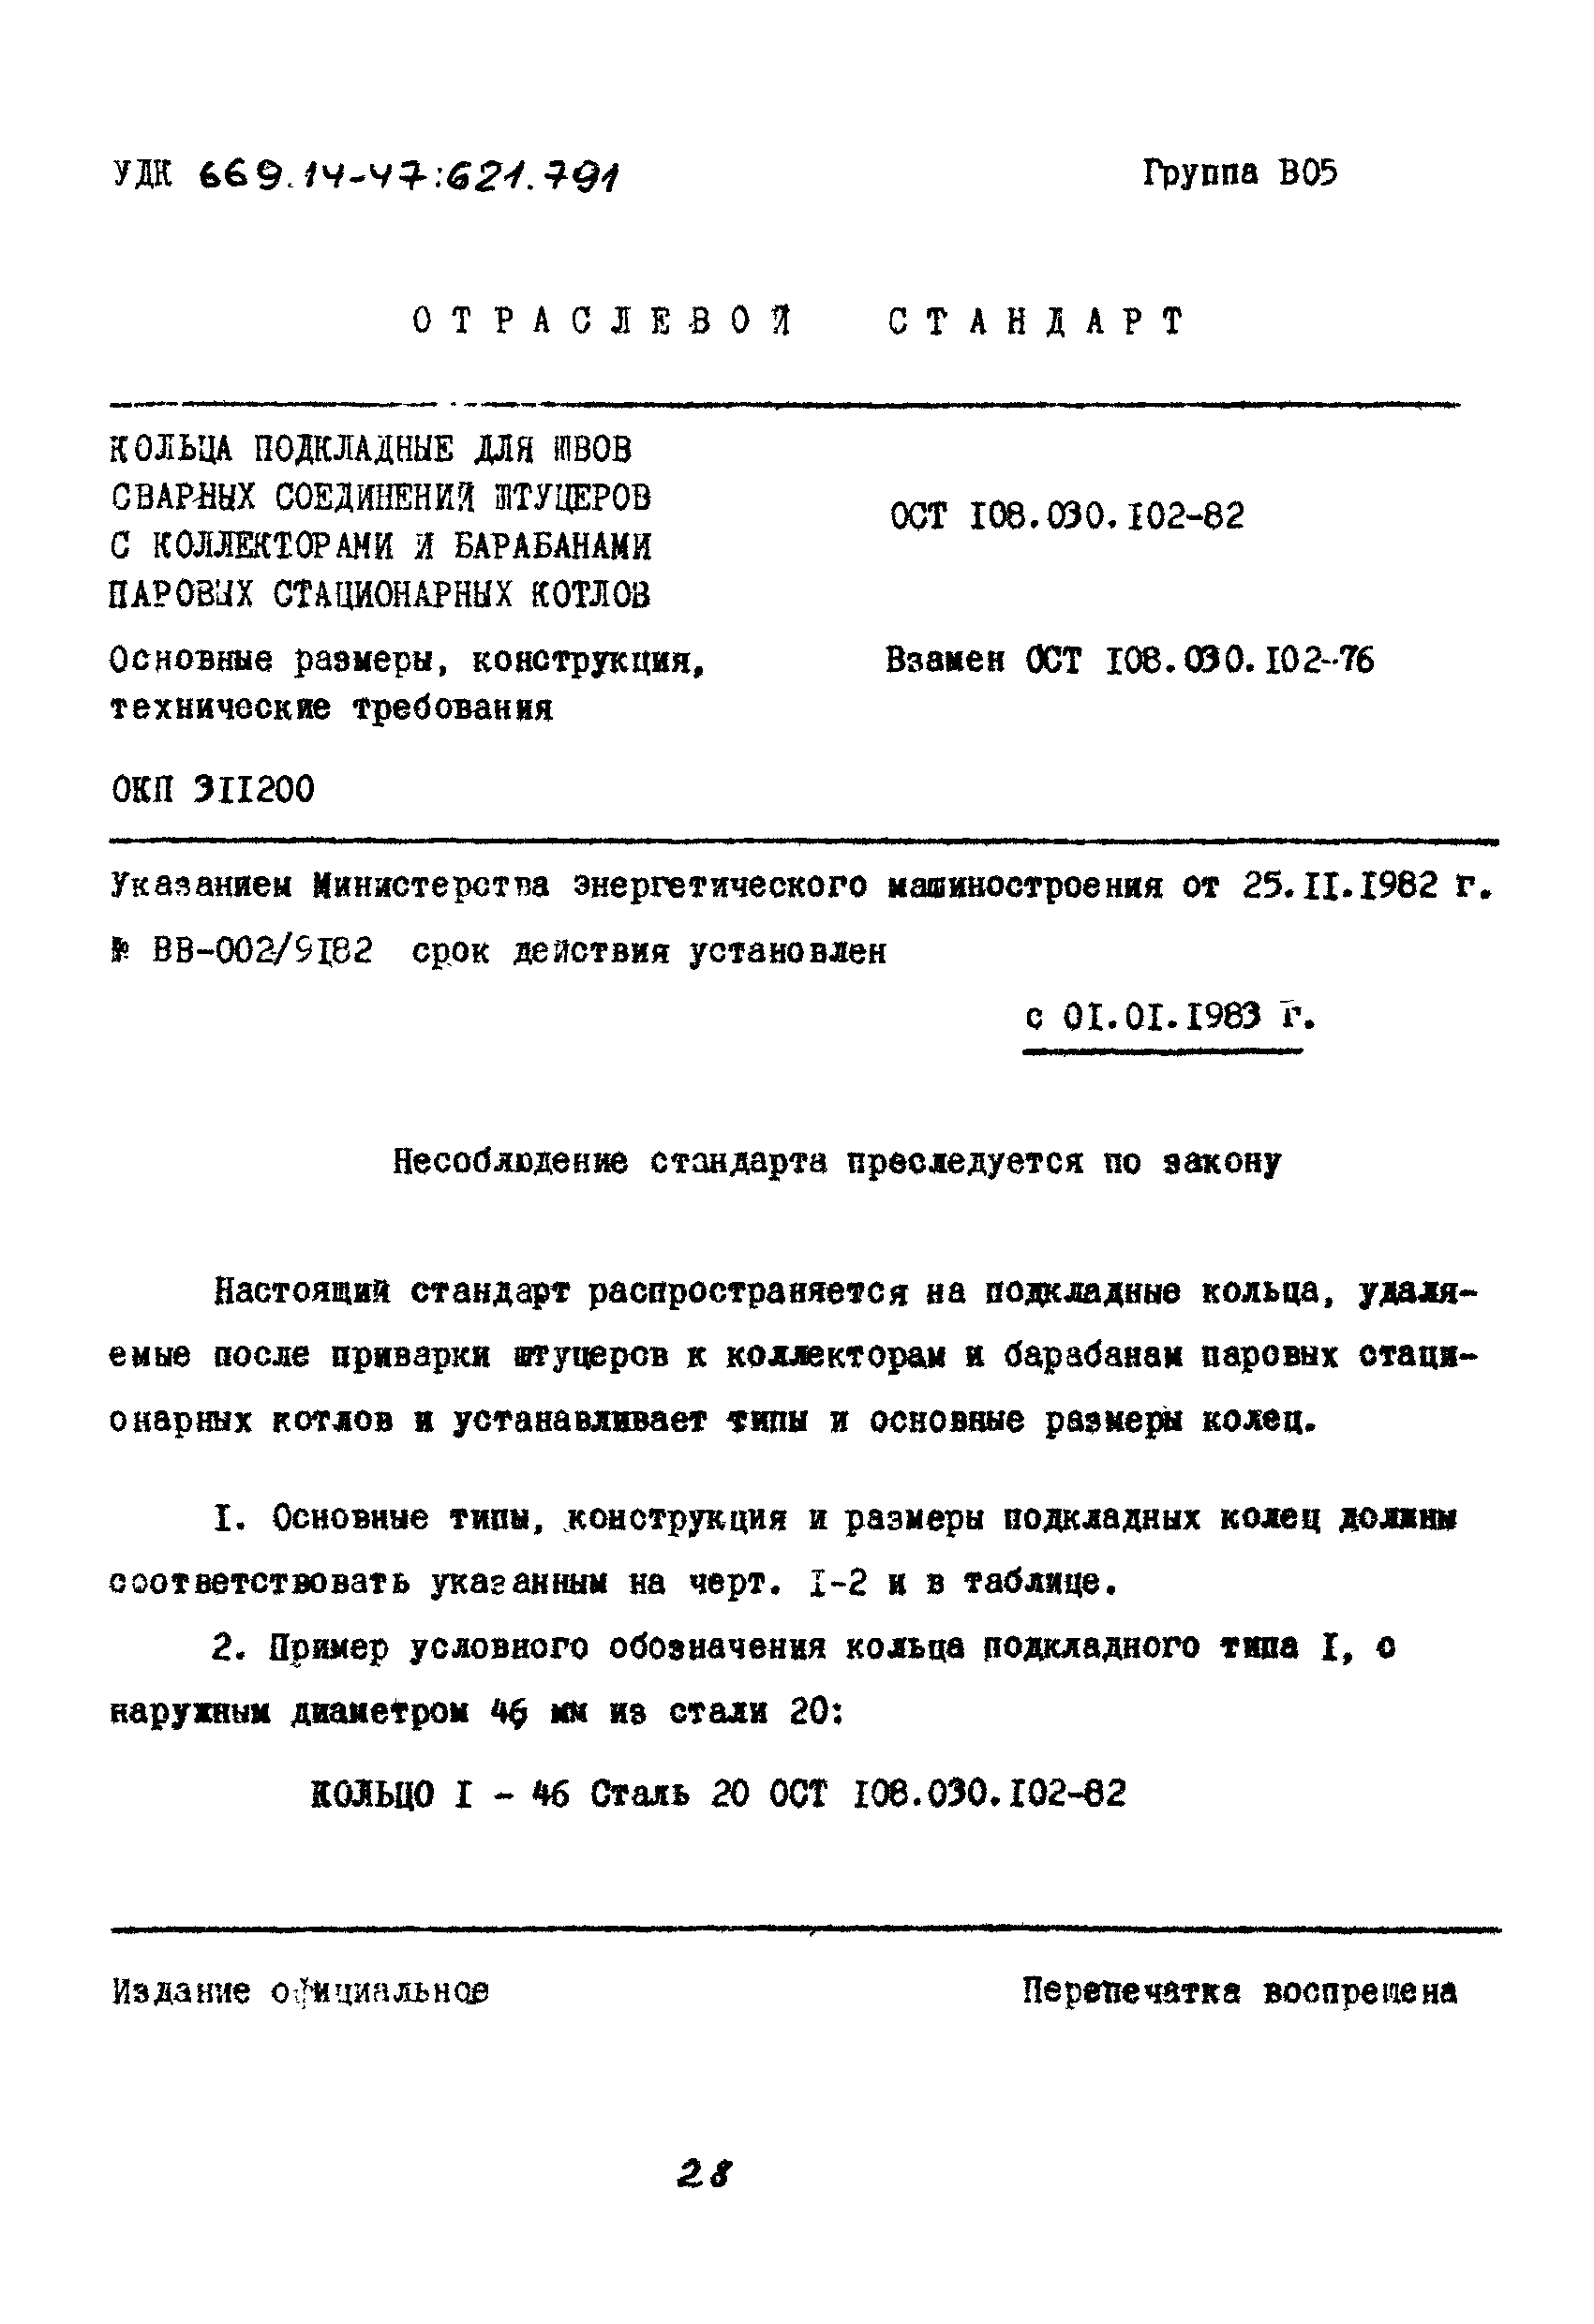 ОСТ 108.030.102-82